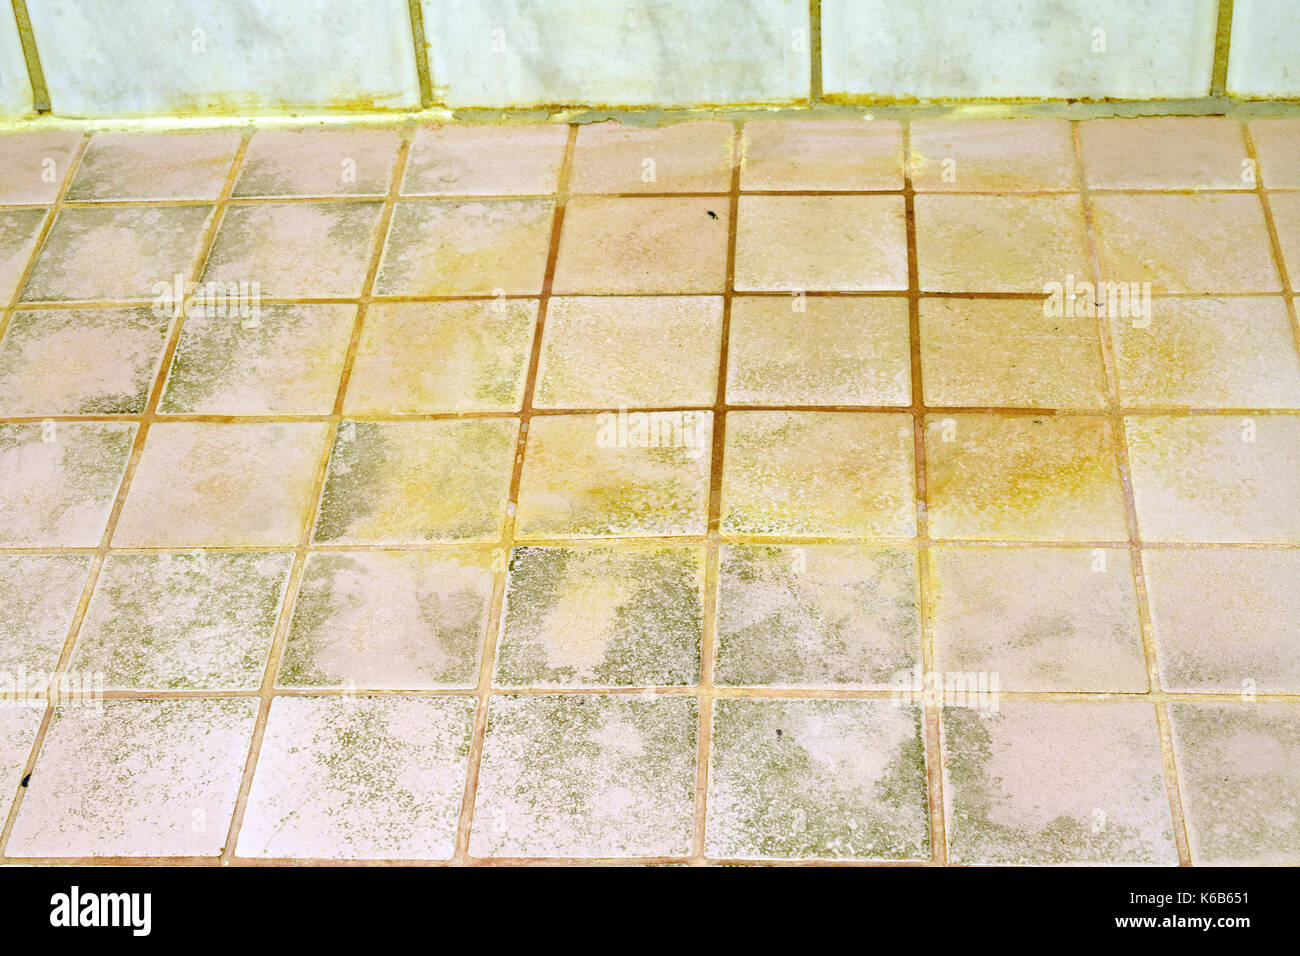 Mold On The Bathroom Tile Floor Stock Photo 158827565 Alamy